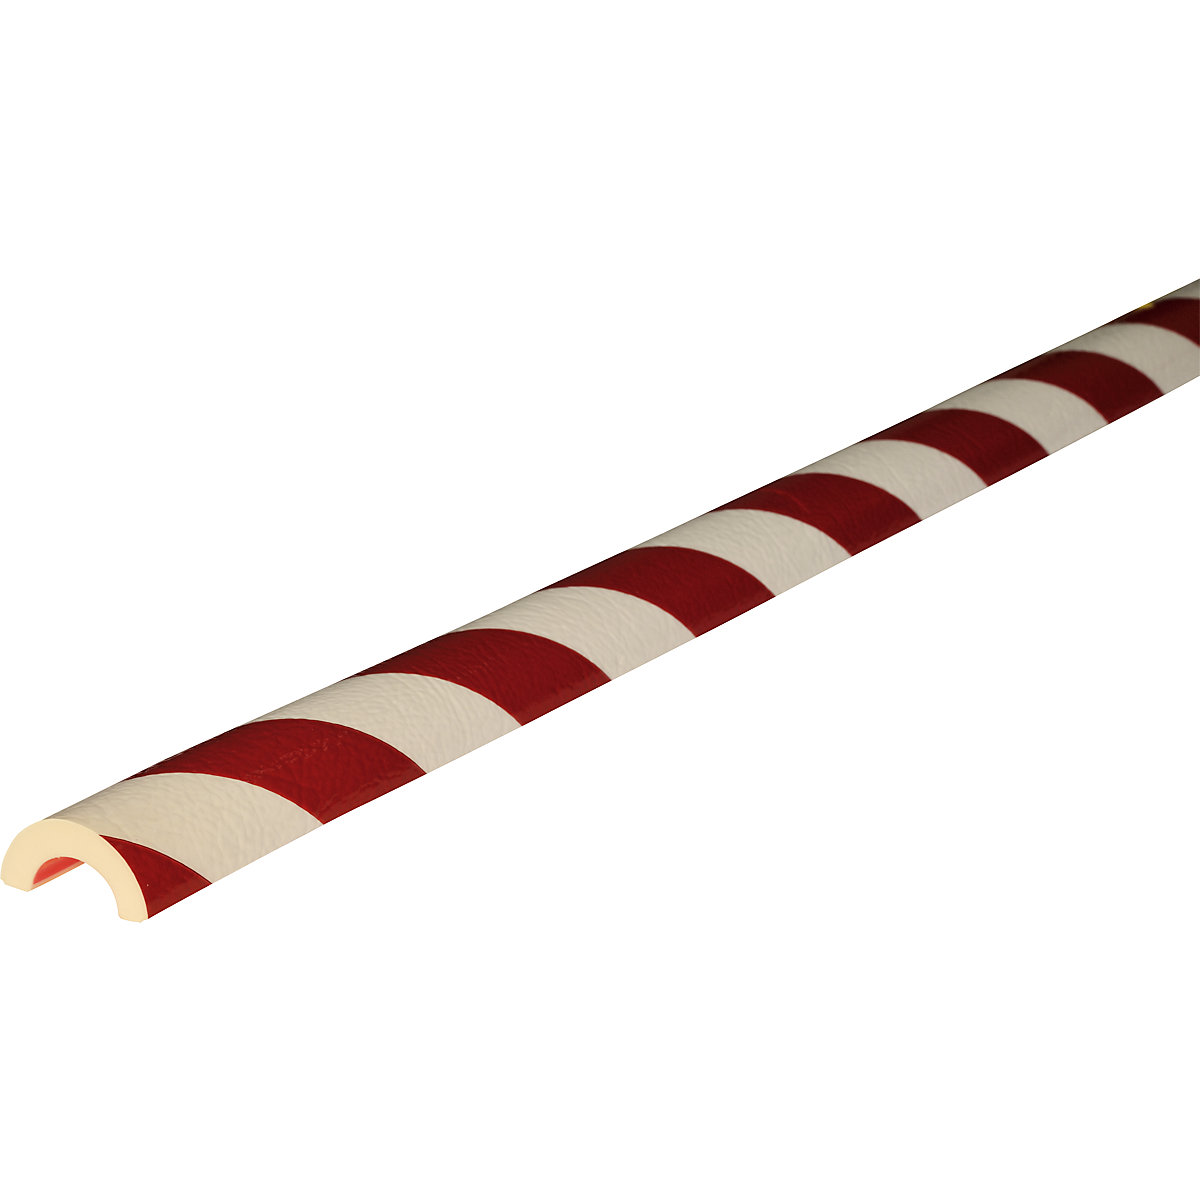 Protezione tubolare Knuffi® – SHG, tipo R30, 1 rotolo da 50 m, rosso / bianco-10